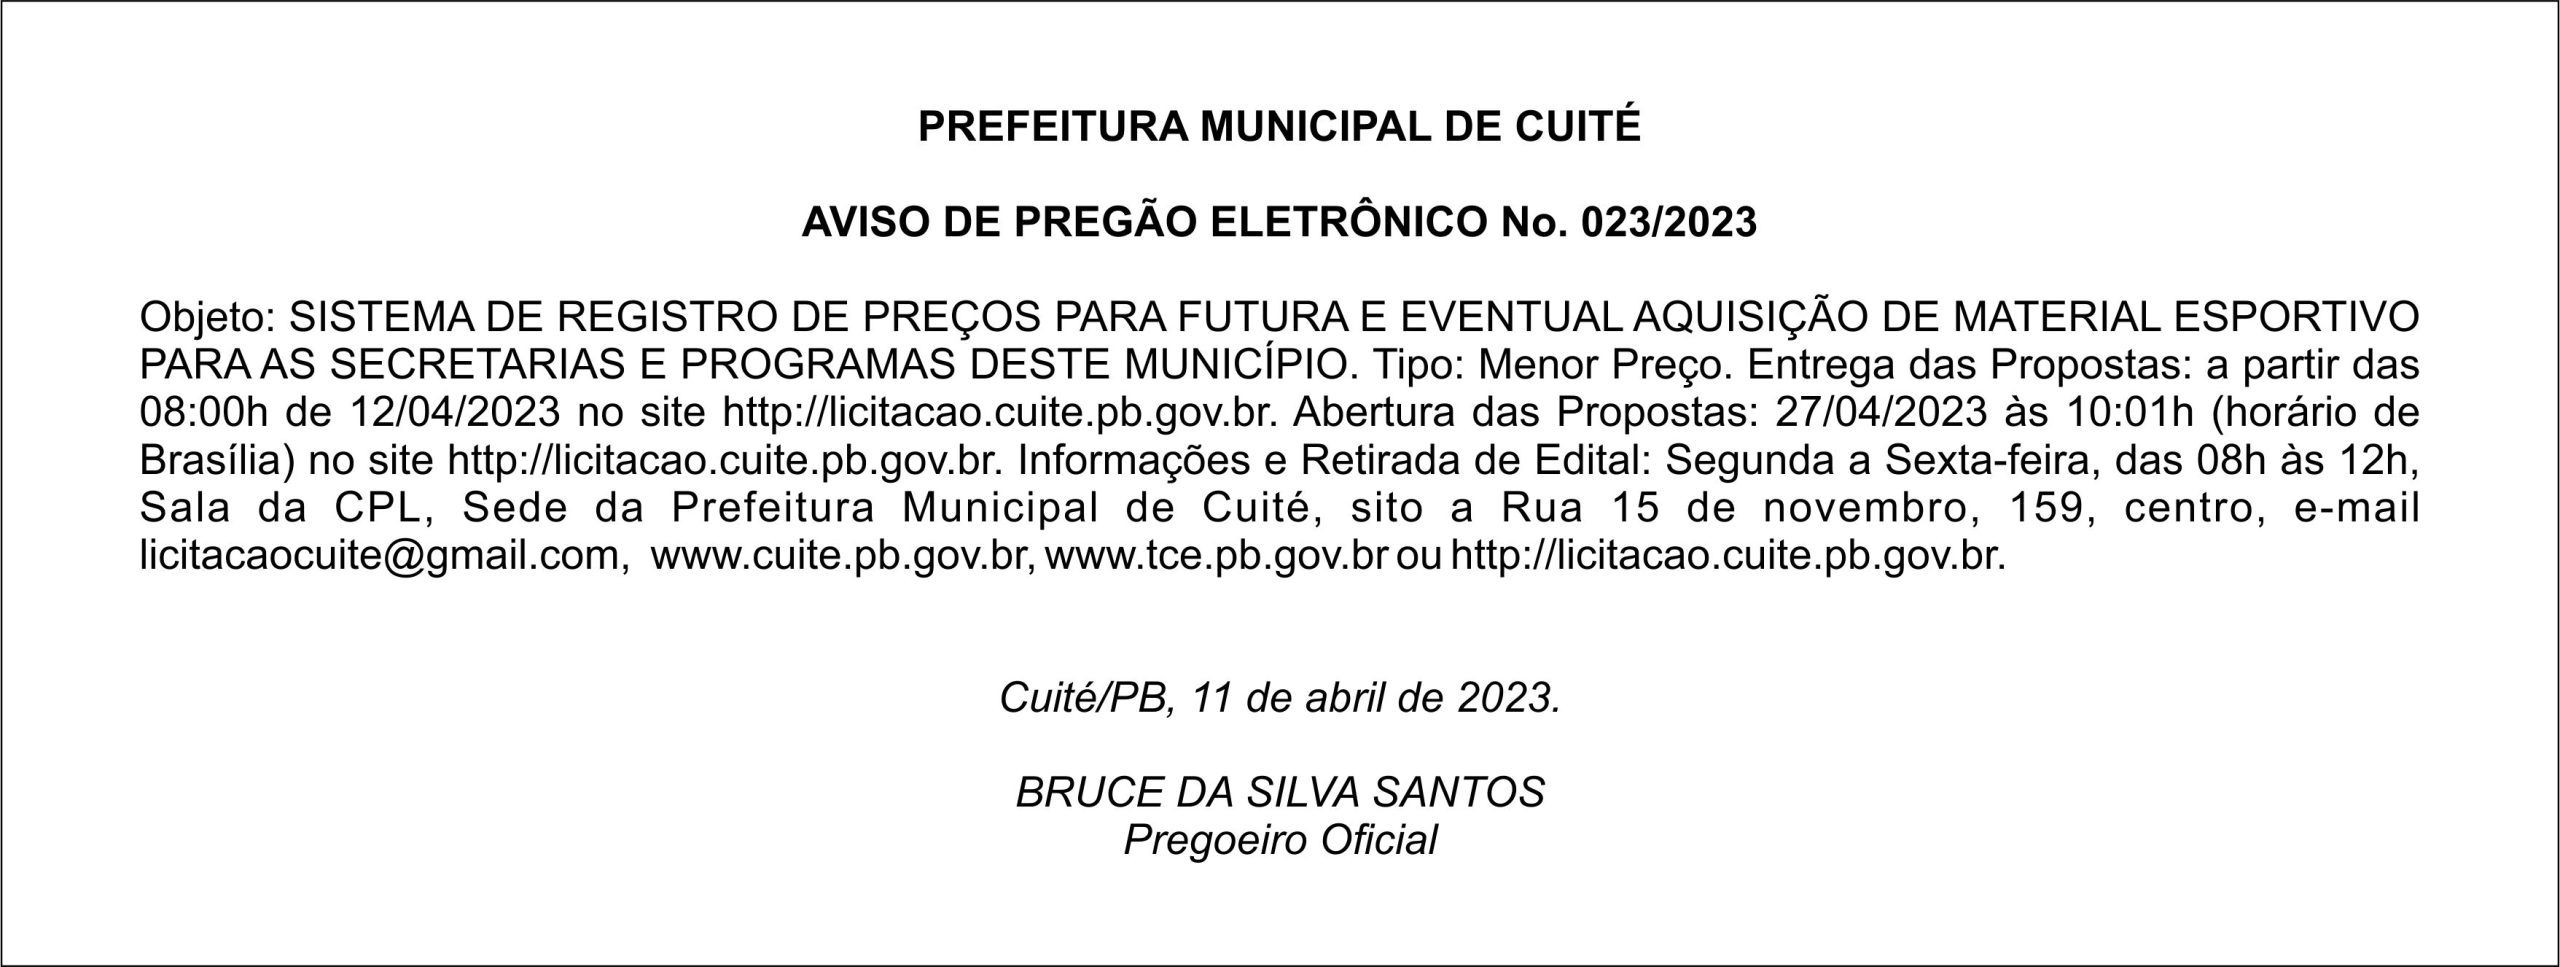 PREFEITURA MUNICIPAL DE CUITÉ – AVISO DE PREGÃO ELETRÔNICO N°. 023/2023